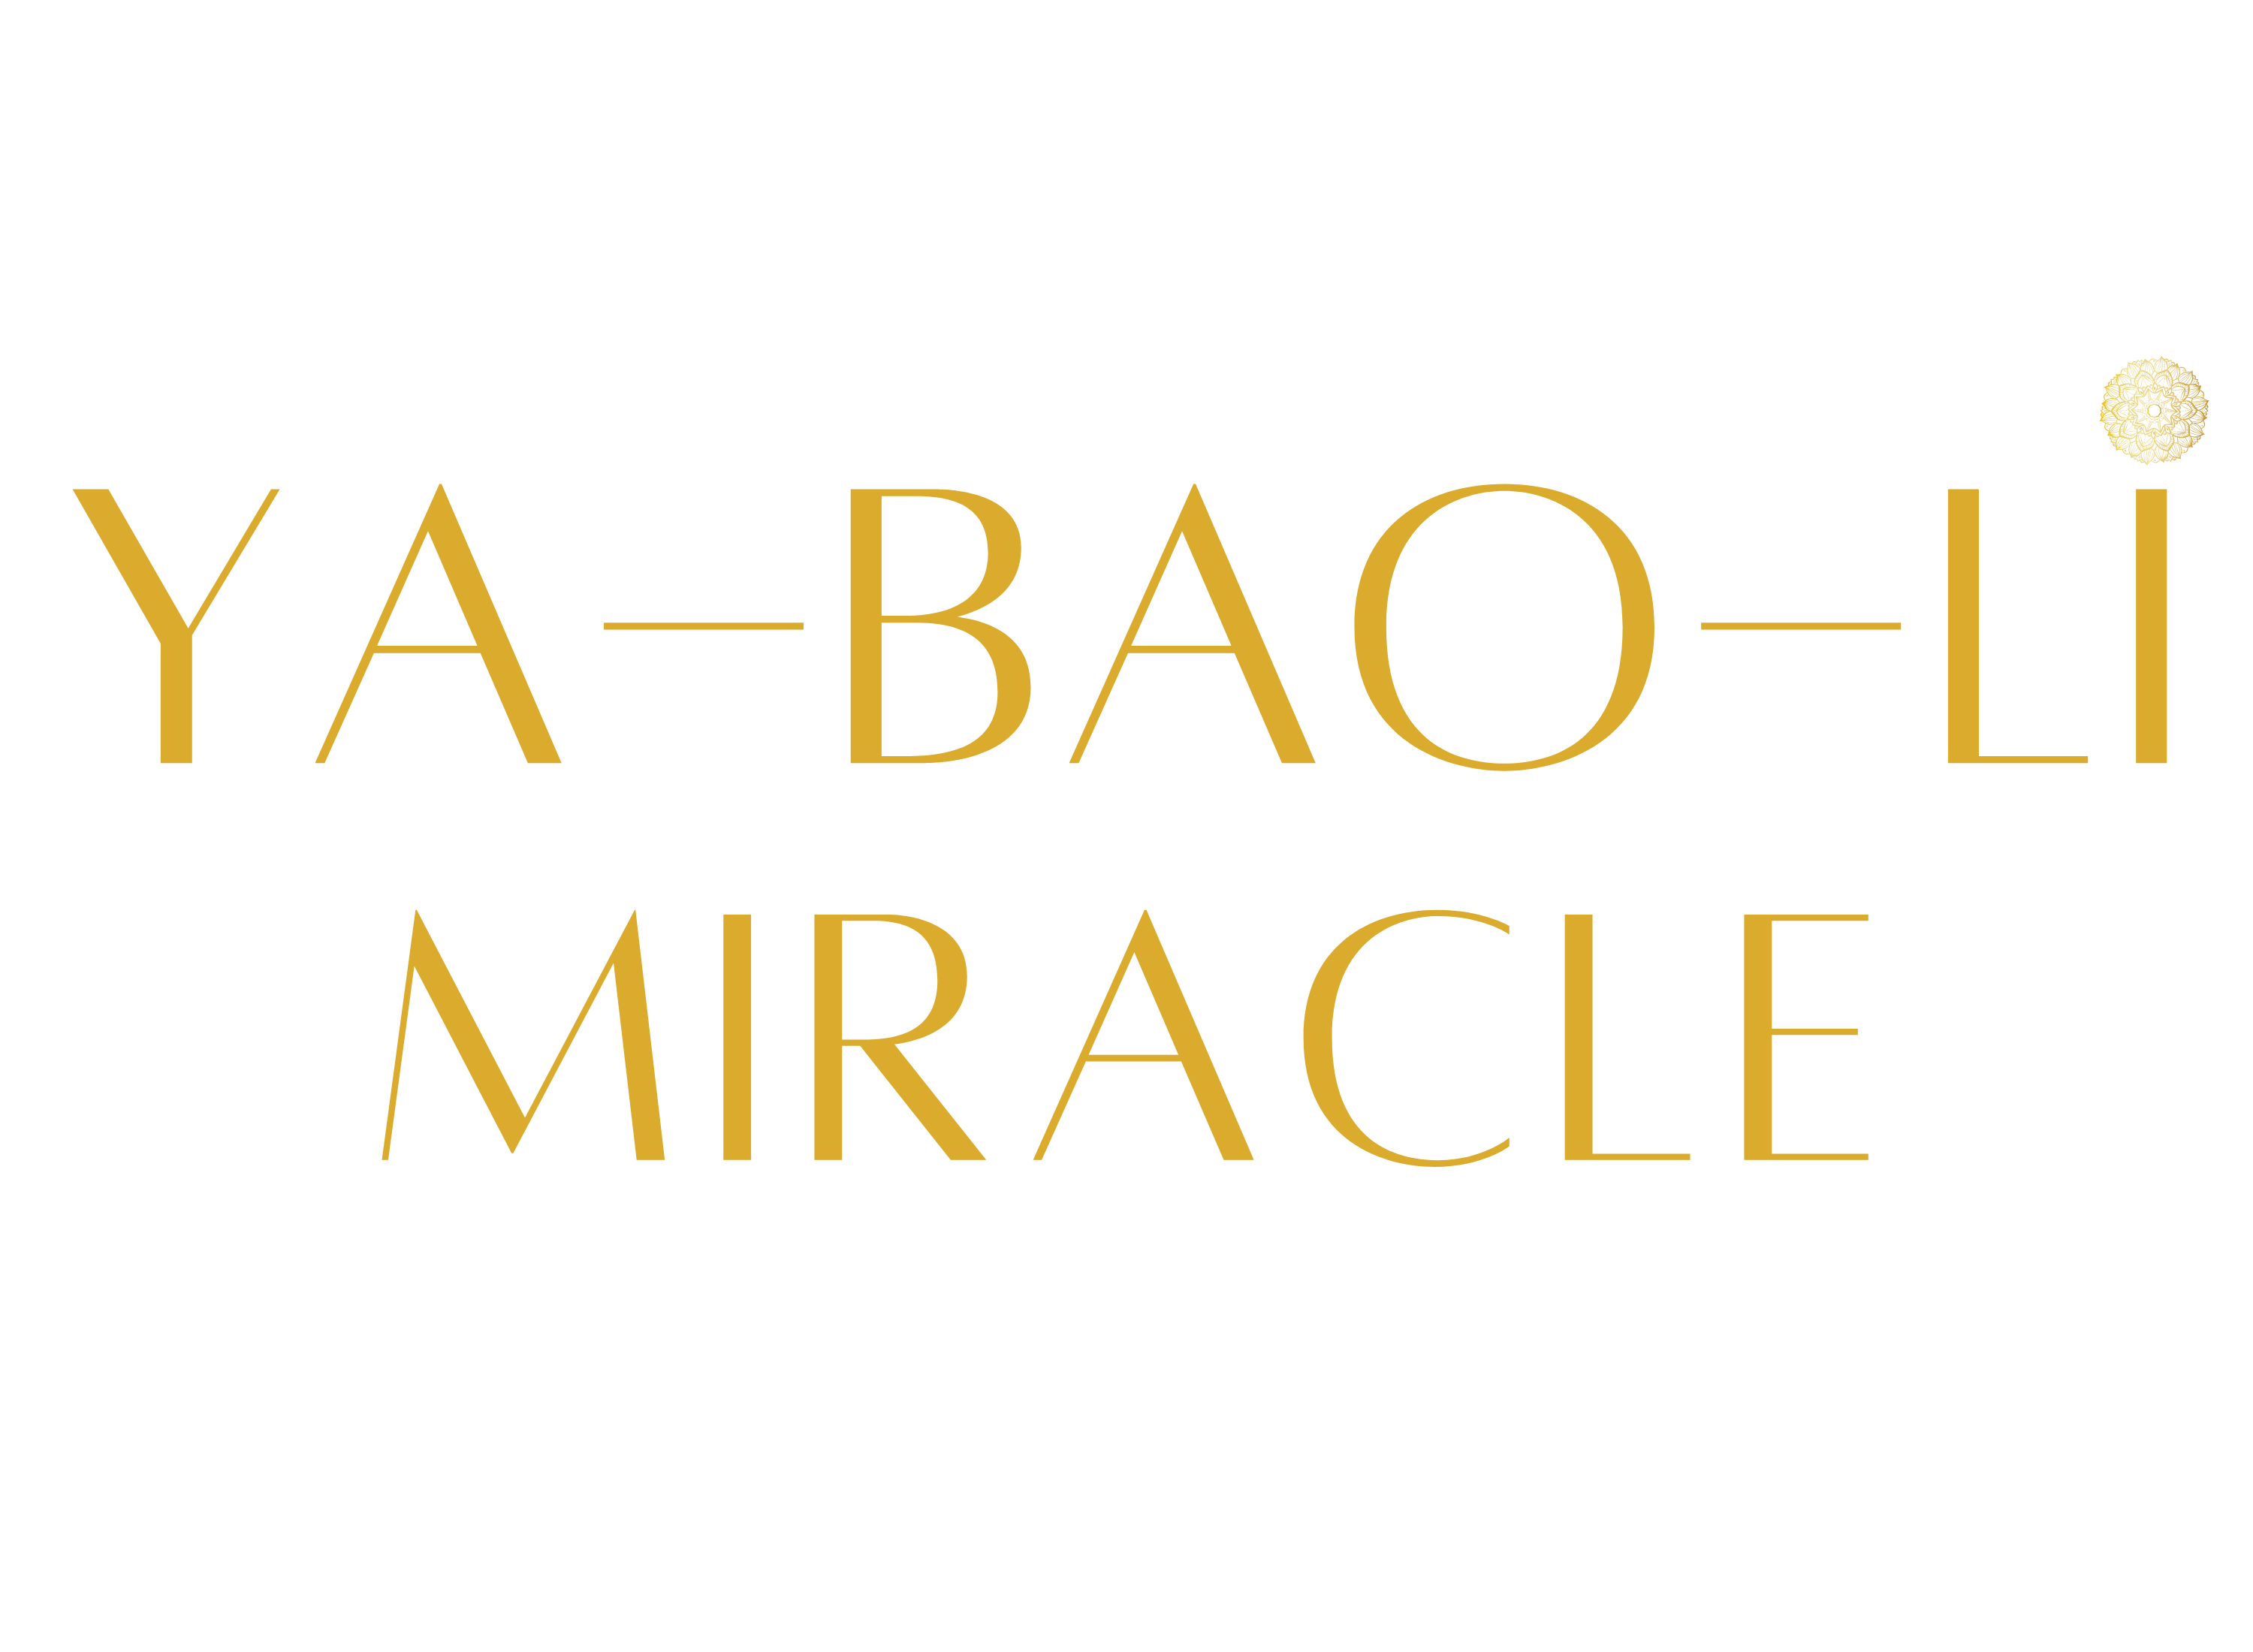 YA-BAO-LI MIRACLE